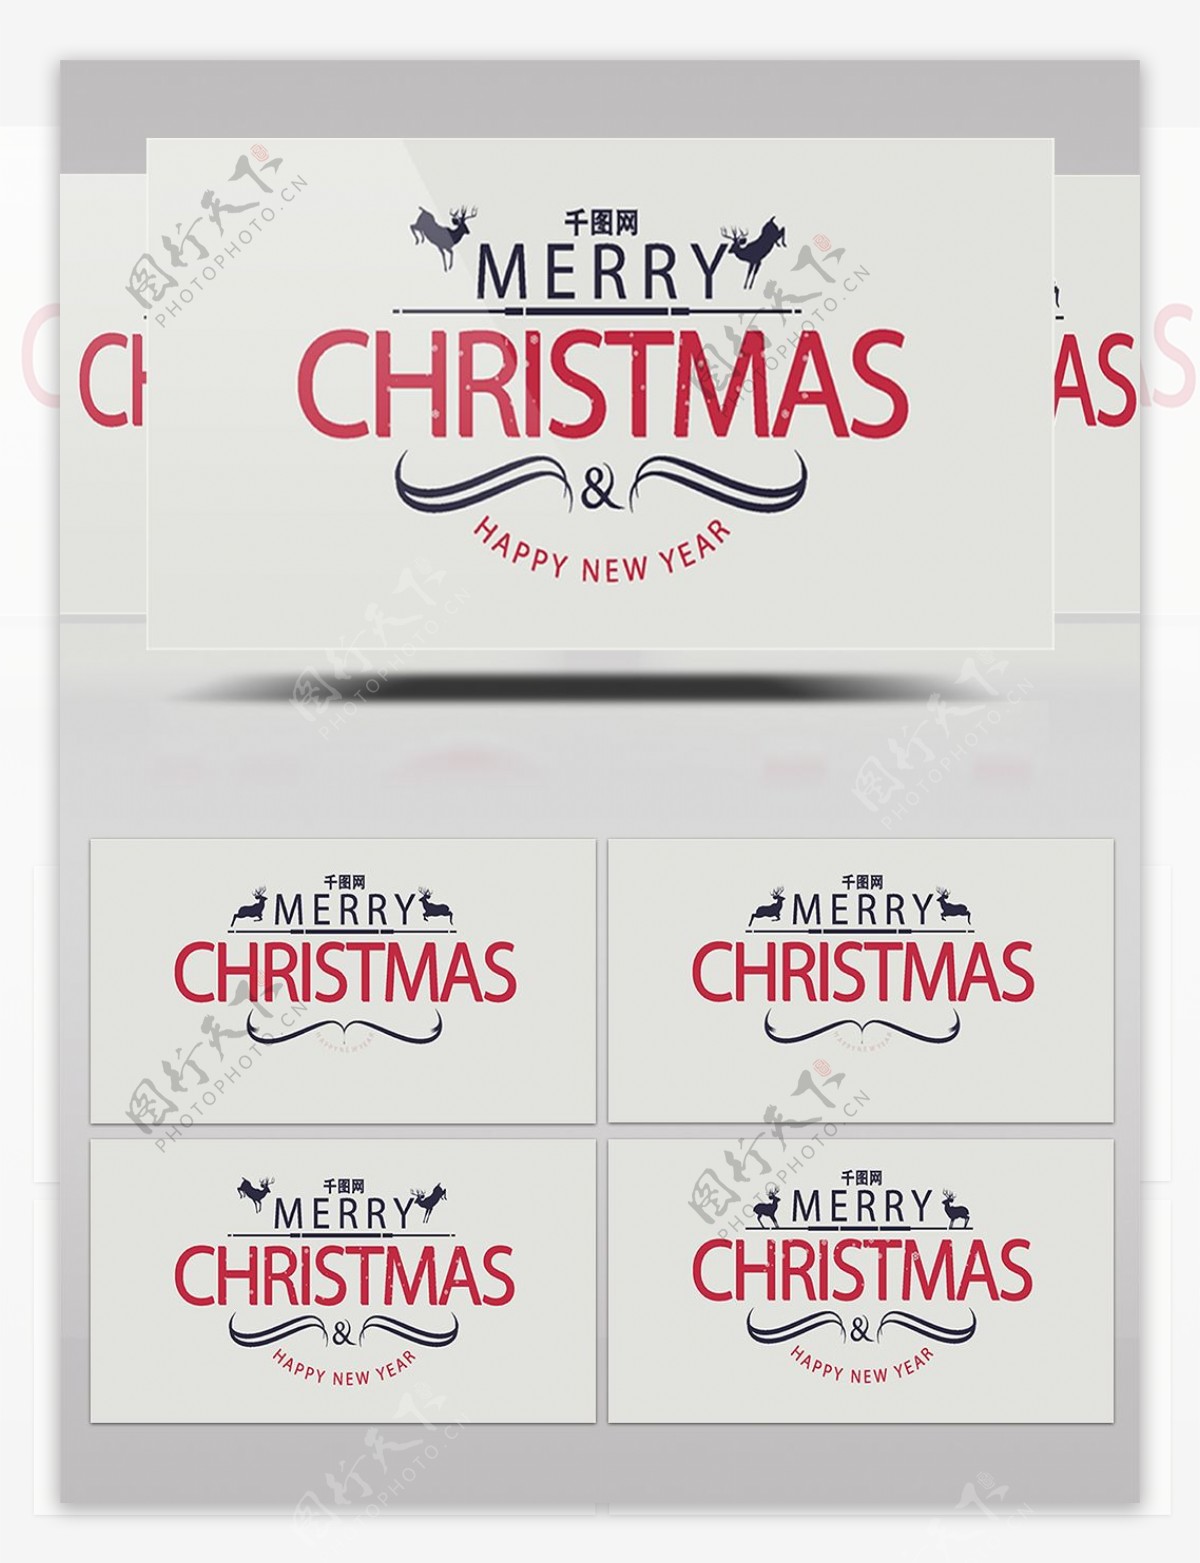 12例经典复古的圣诞节主题文字标签版式ae模板